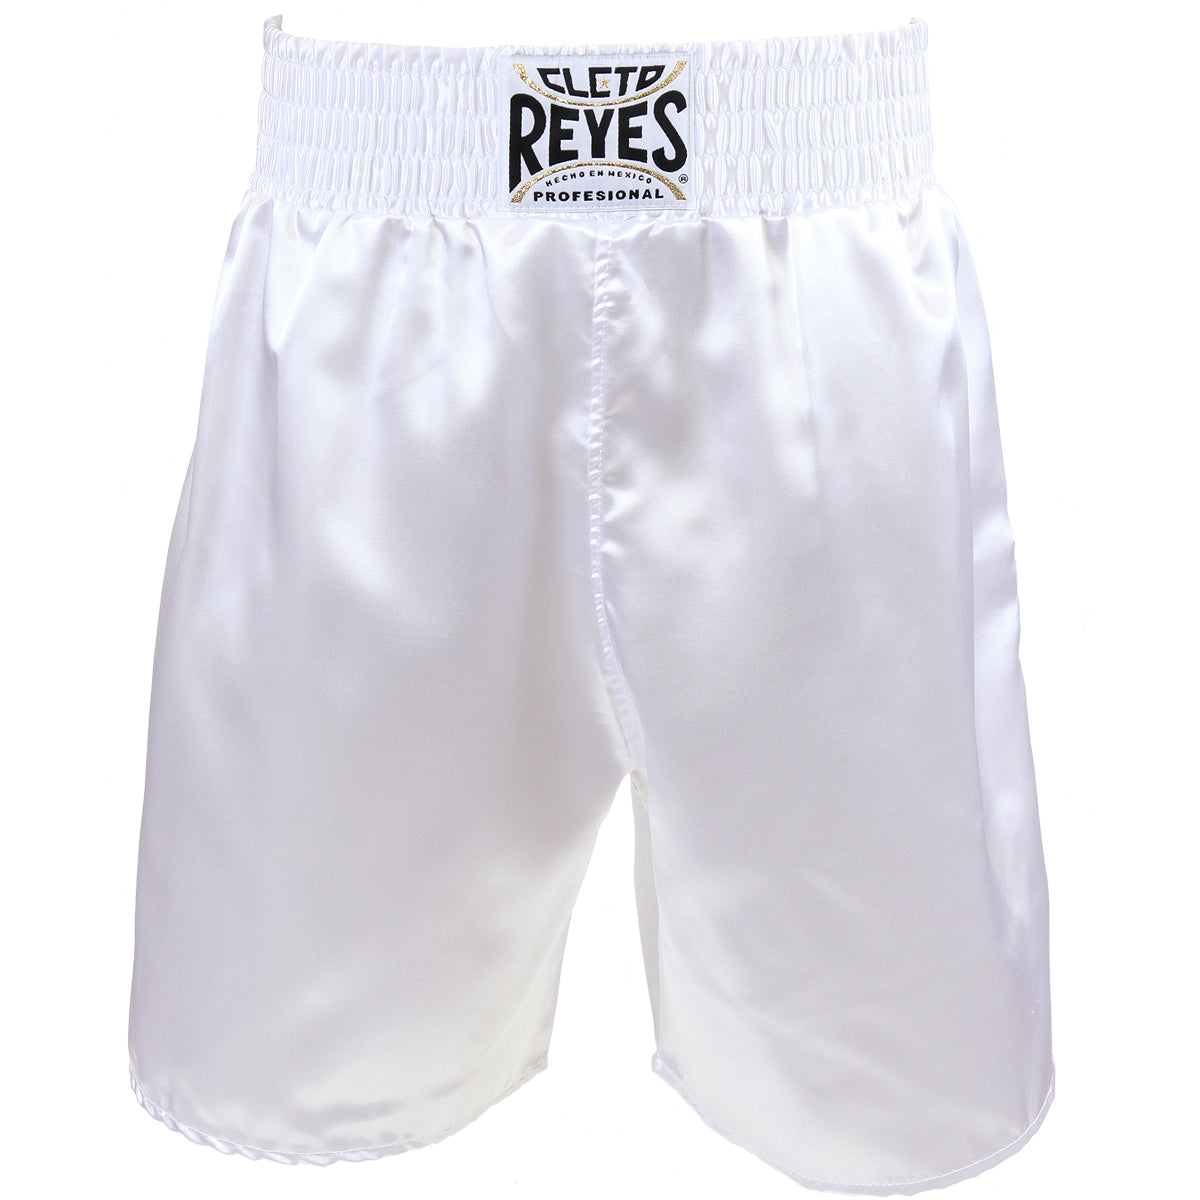 Cleto Reyes Satin Classic Boxing Trunks - White Cleto Reyes